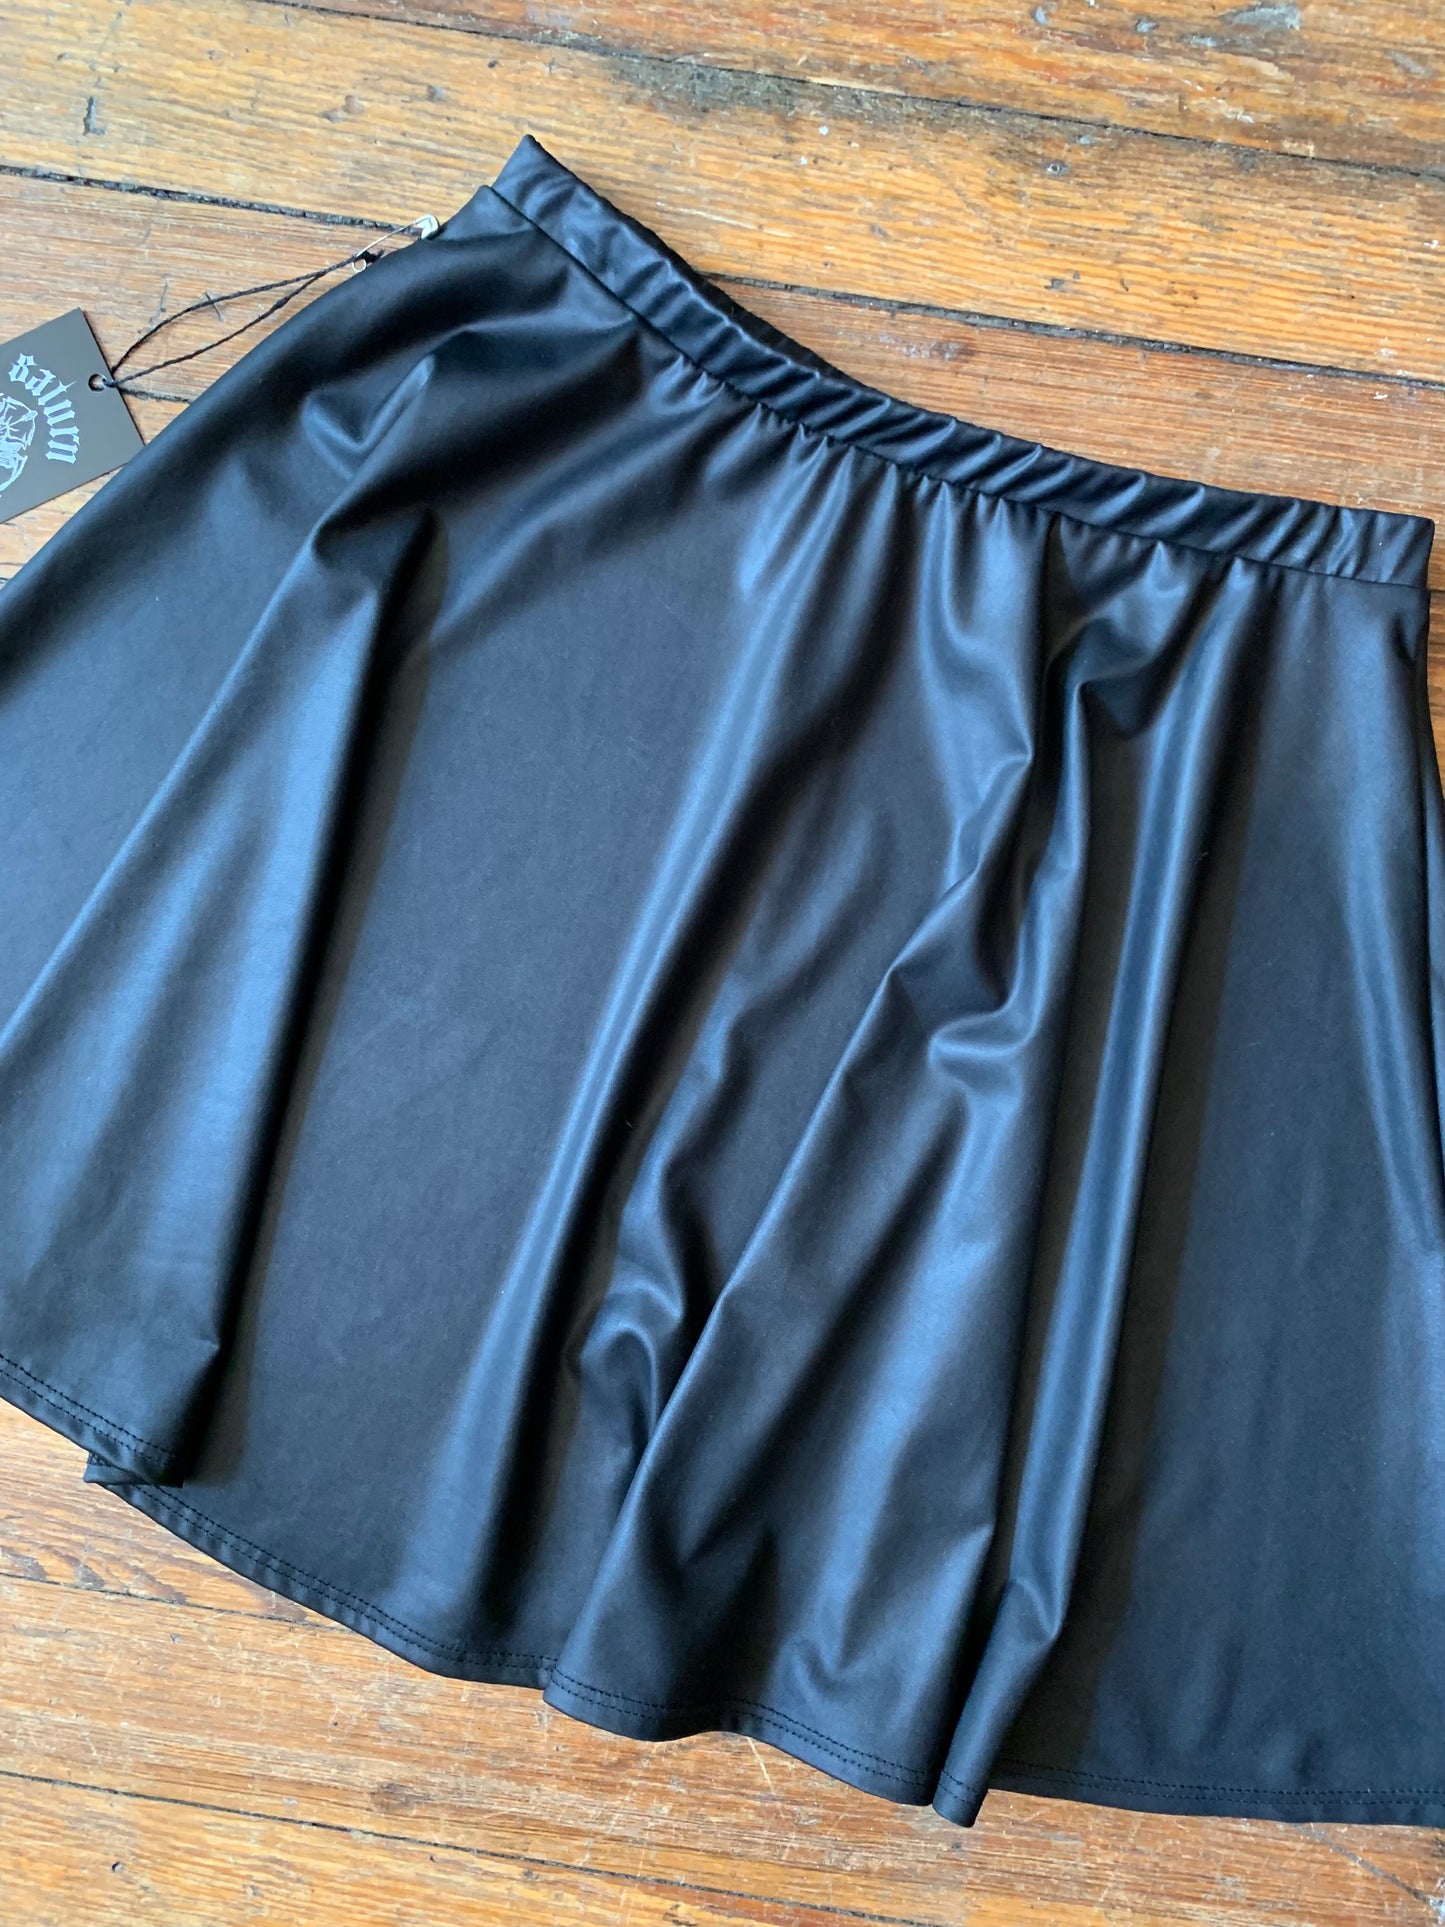 Black Polyester Tennis Skirt